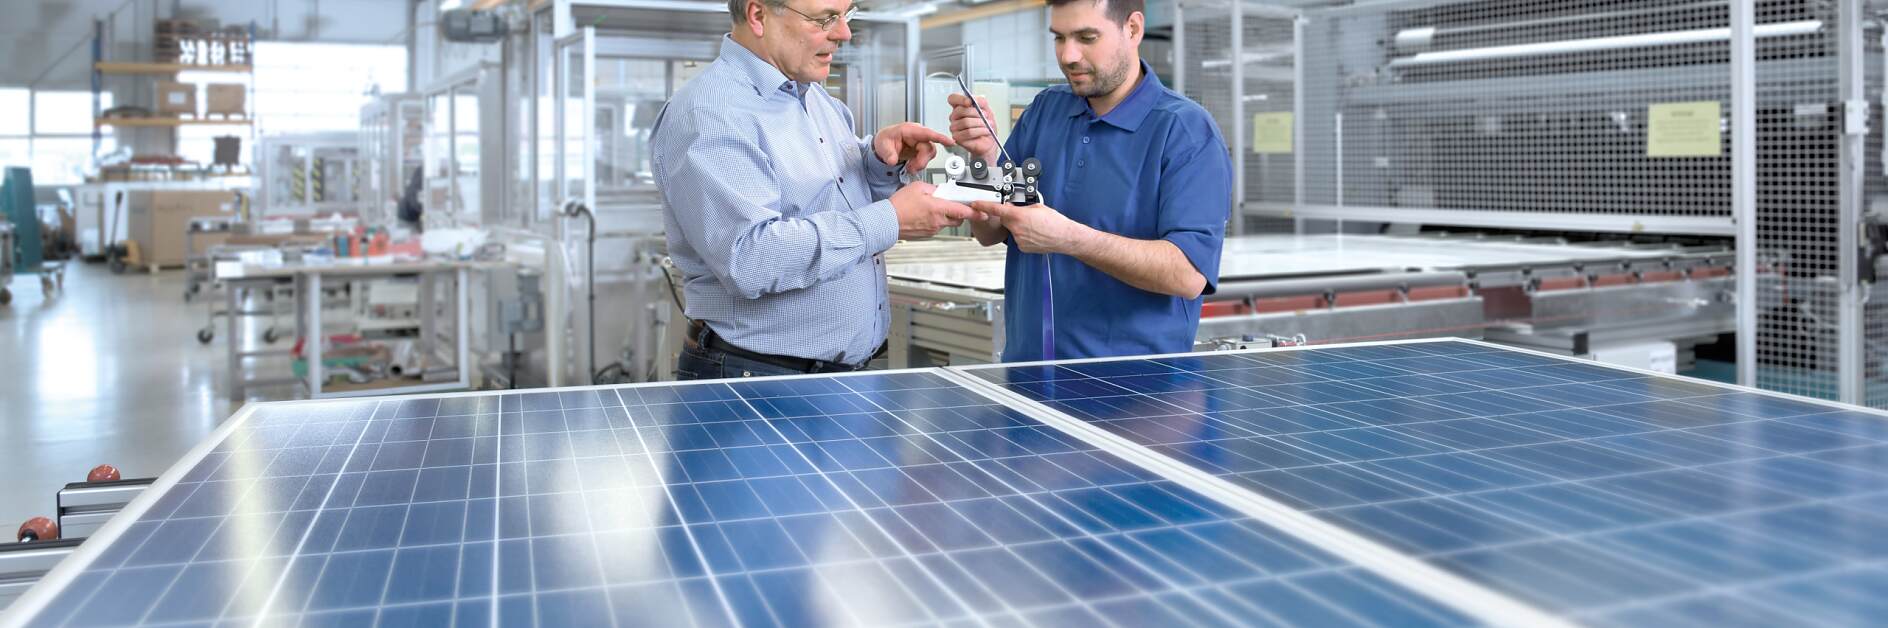 Soluţii pentru industria energiei solare de la tesa